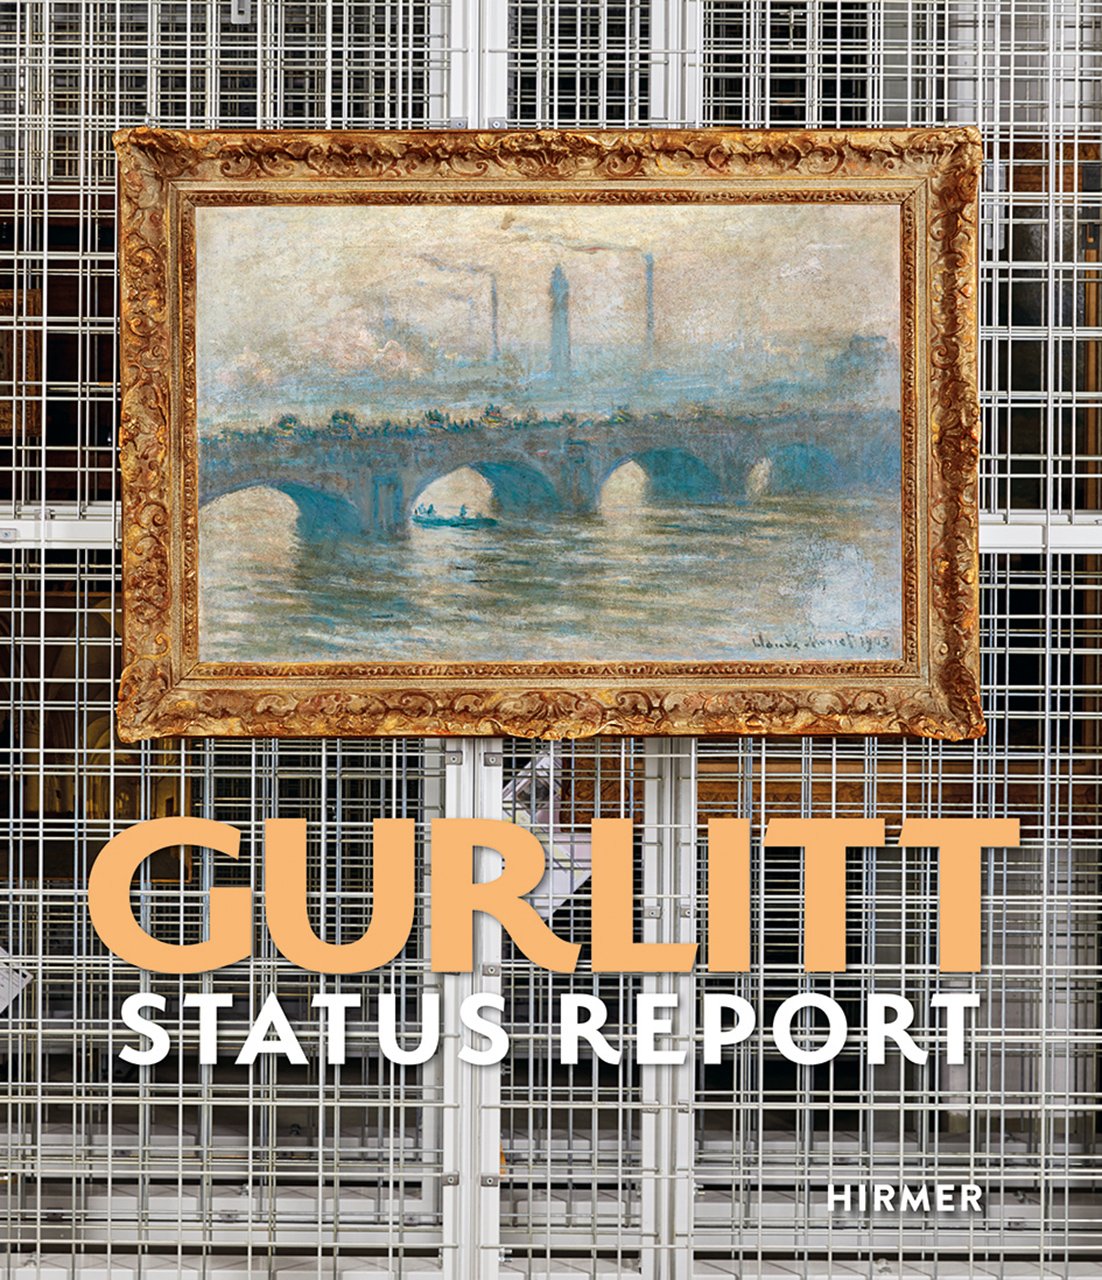 Gurlitt Status Report | Kunst- und Ausstellungshalle der Bundesrepublik Deutschland GmbH